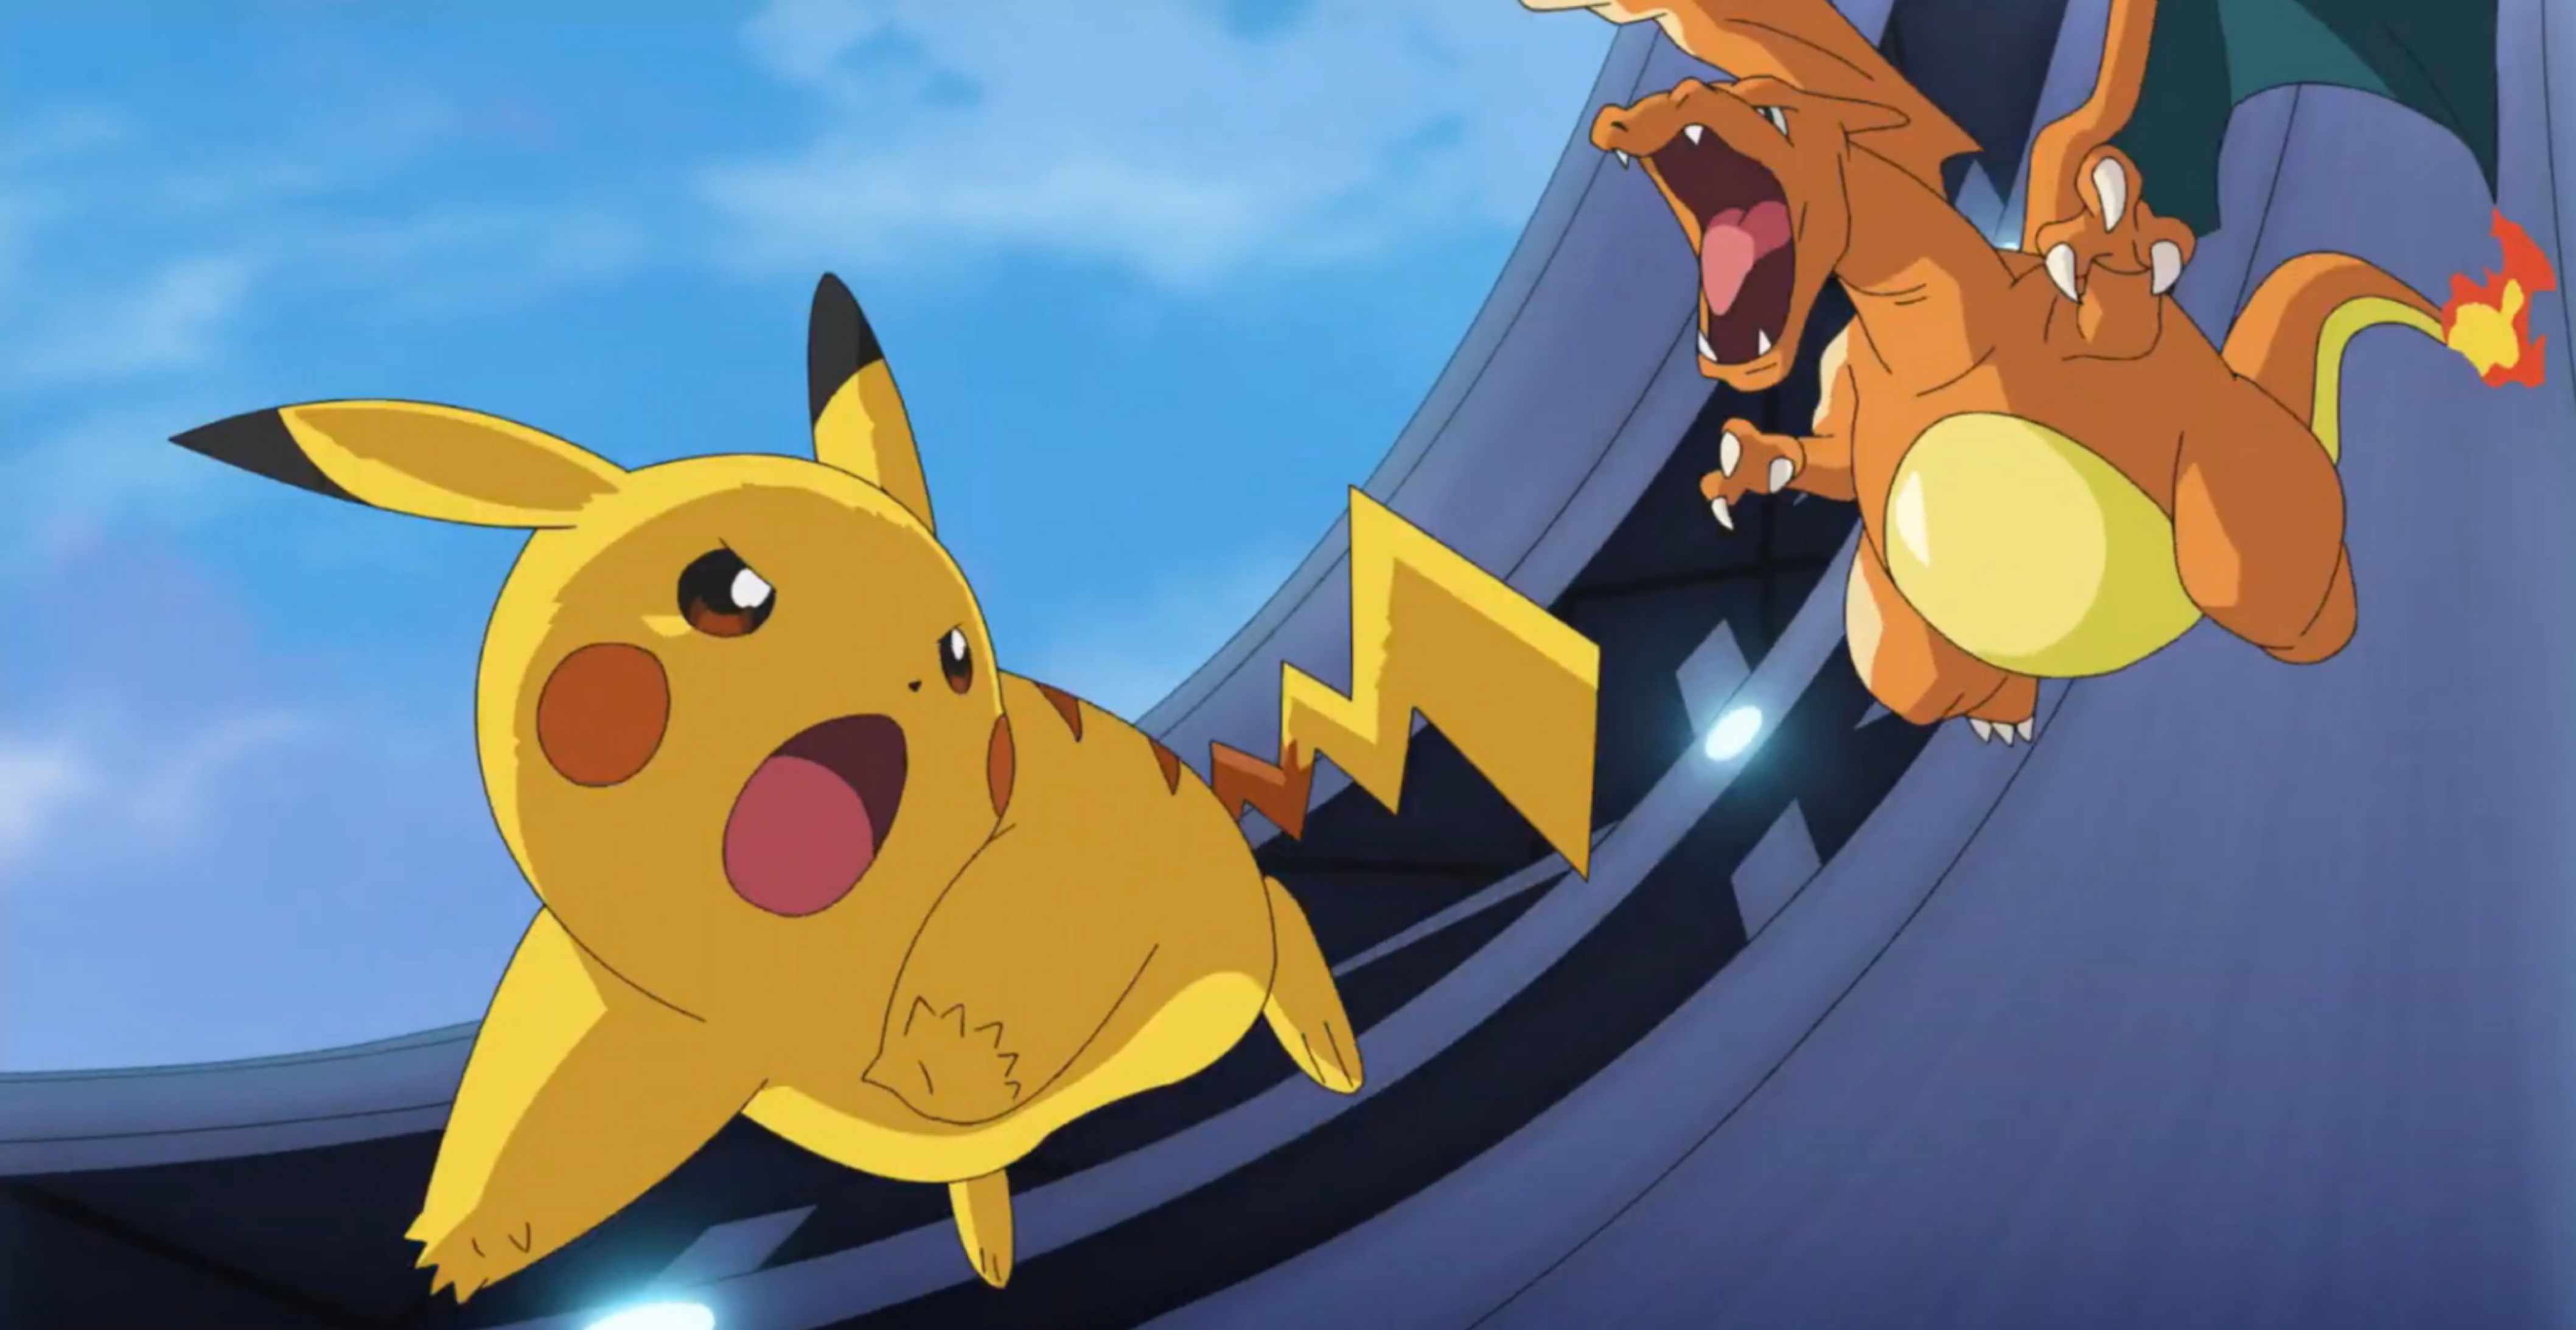 Pokémon Go Animacion Batalla Pikachu vs Chikorita Stop Motion